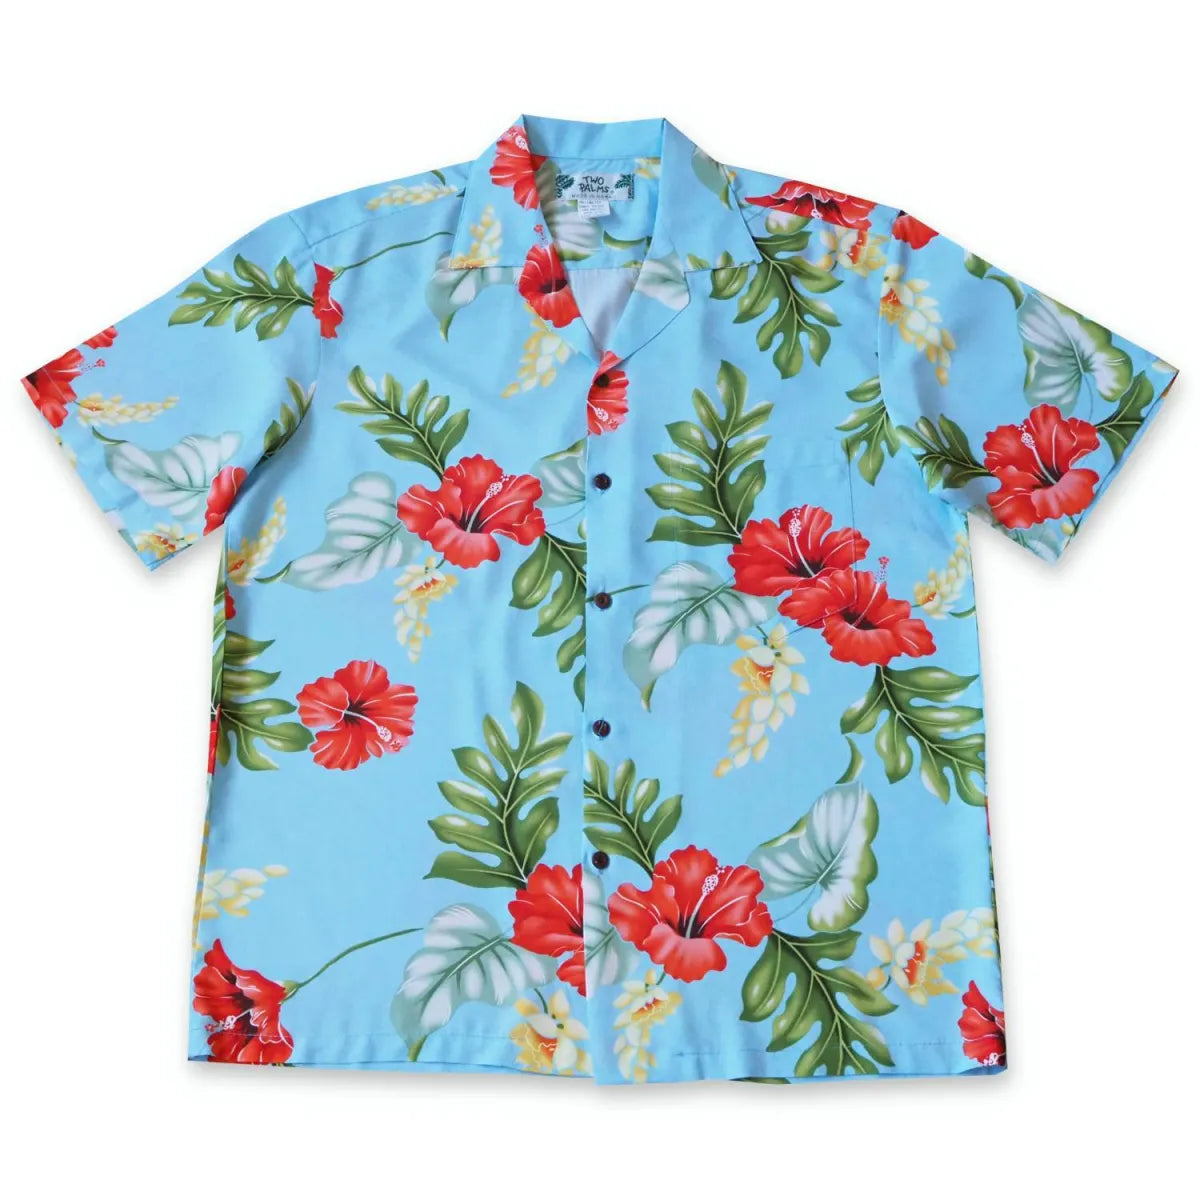 Honeymoon blue hawaiian rayon shirt